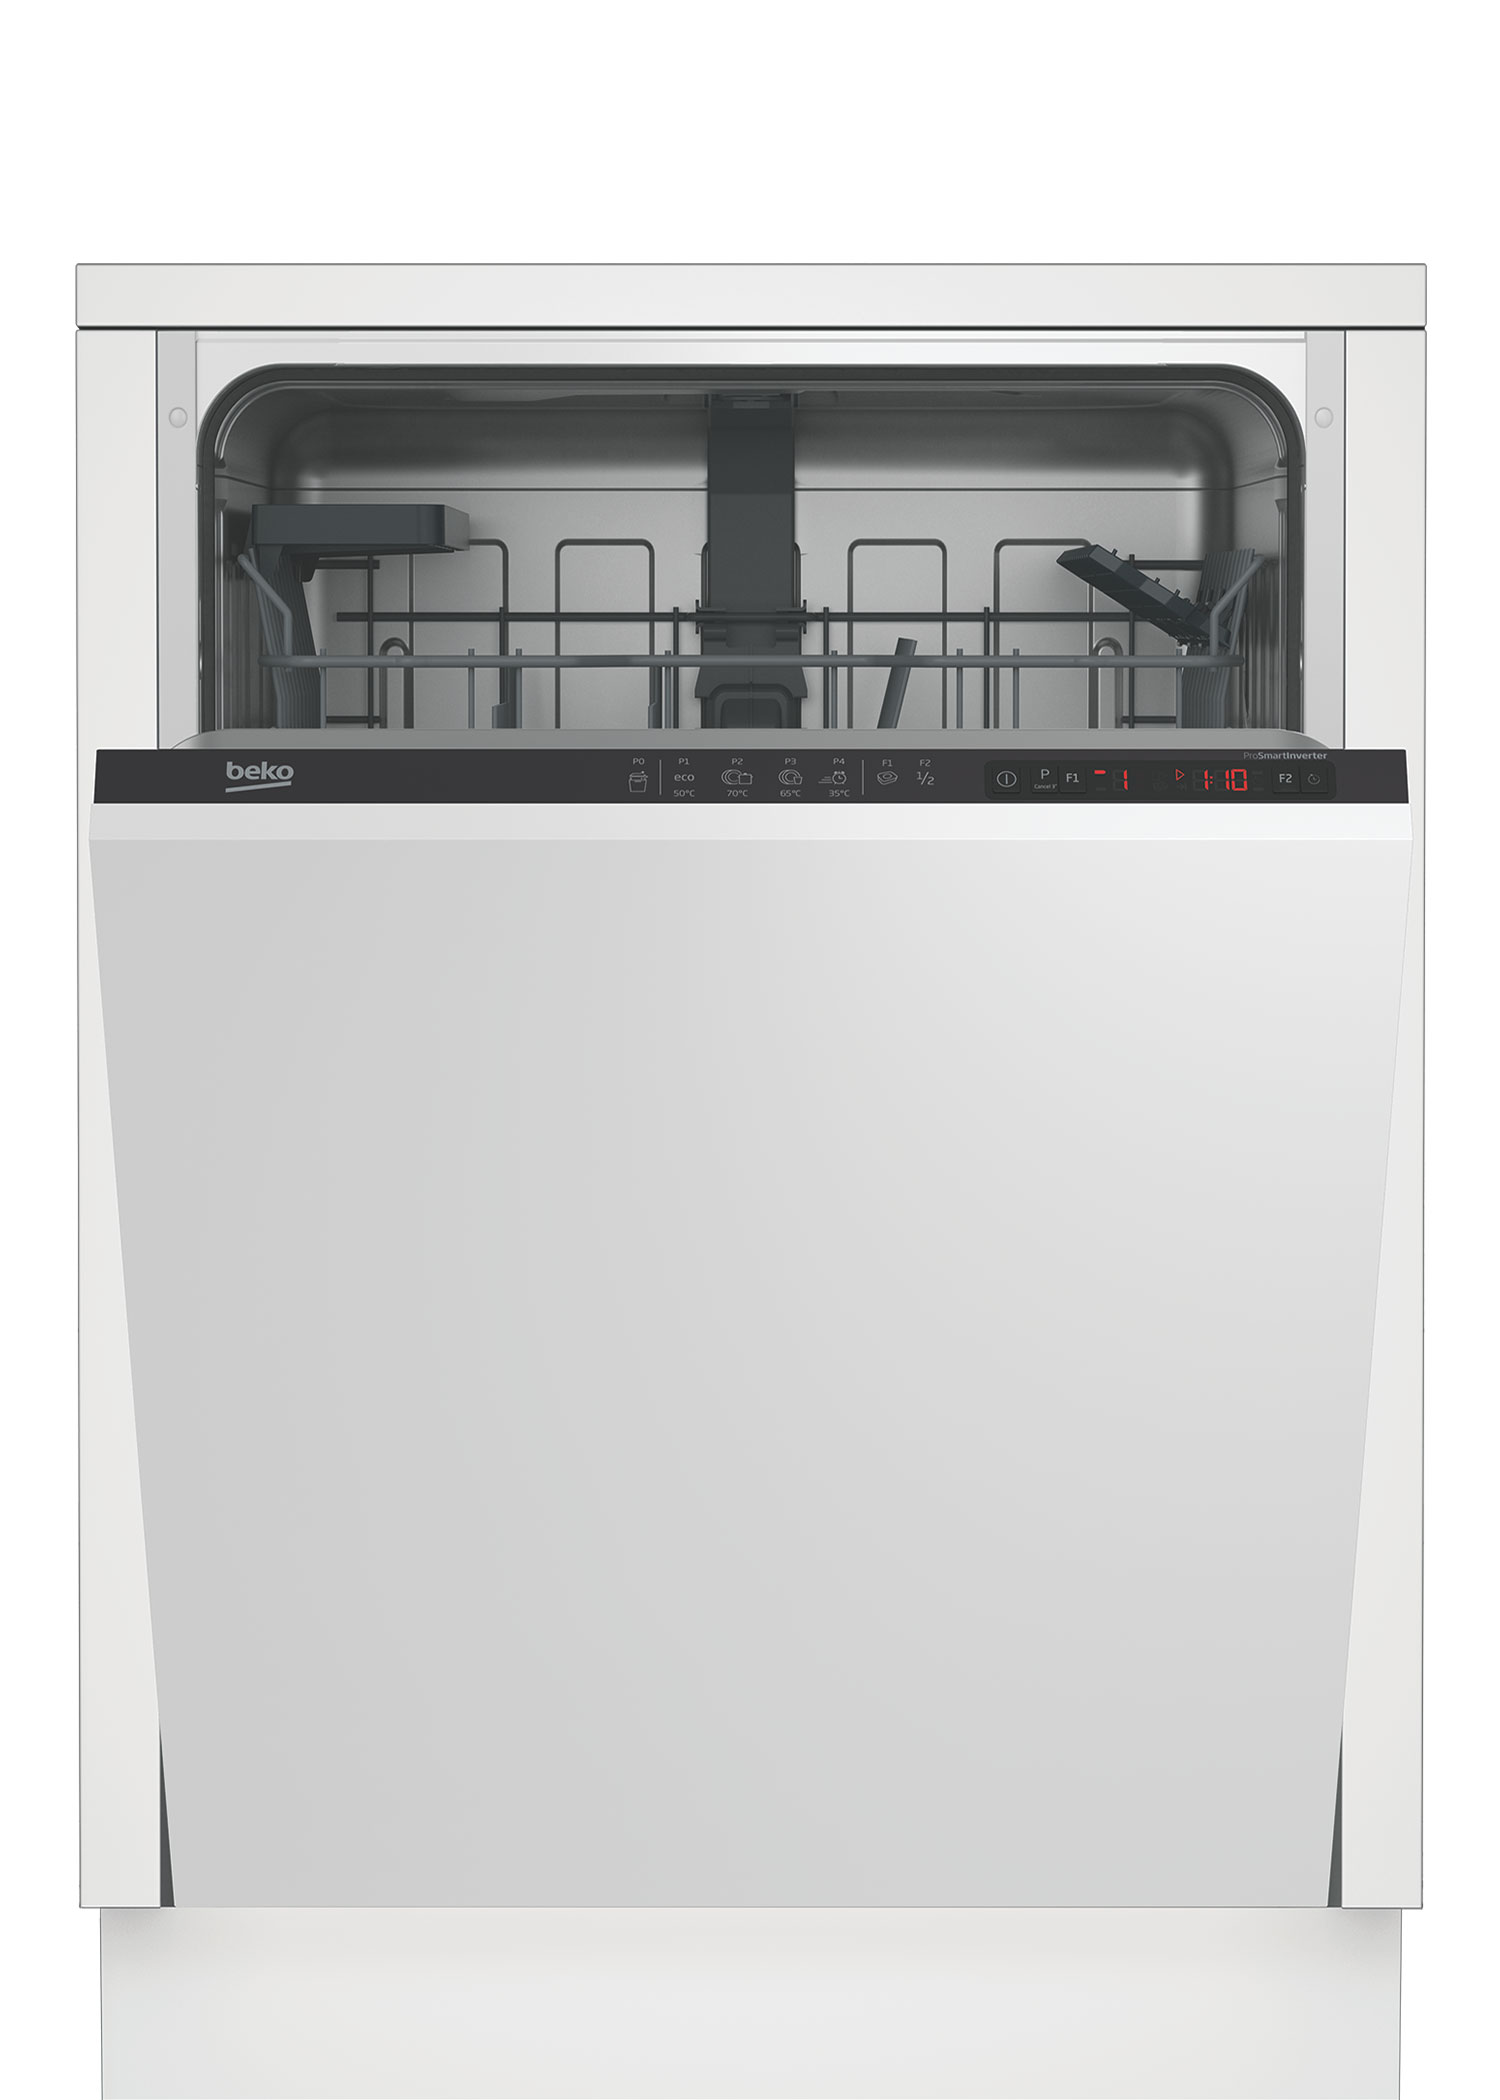 Встраиваемая посудомоечная машина Beko DIN24310 встраиваемая посудомоечная машина beko bdis15021